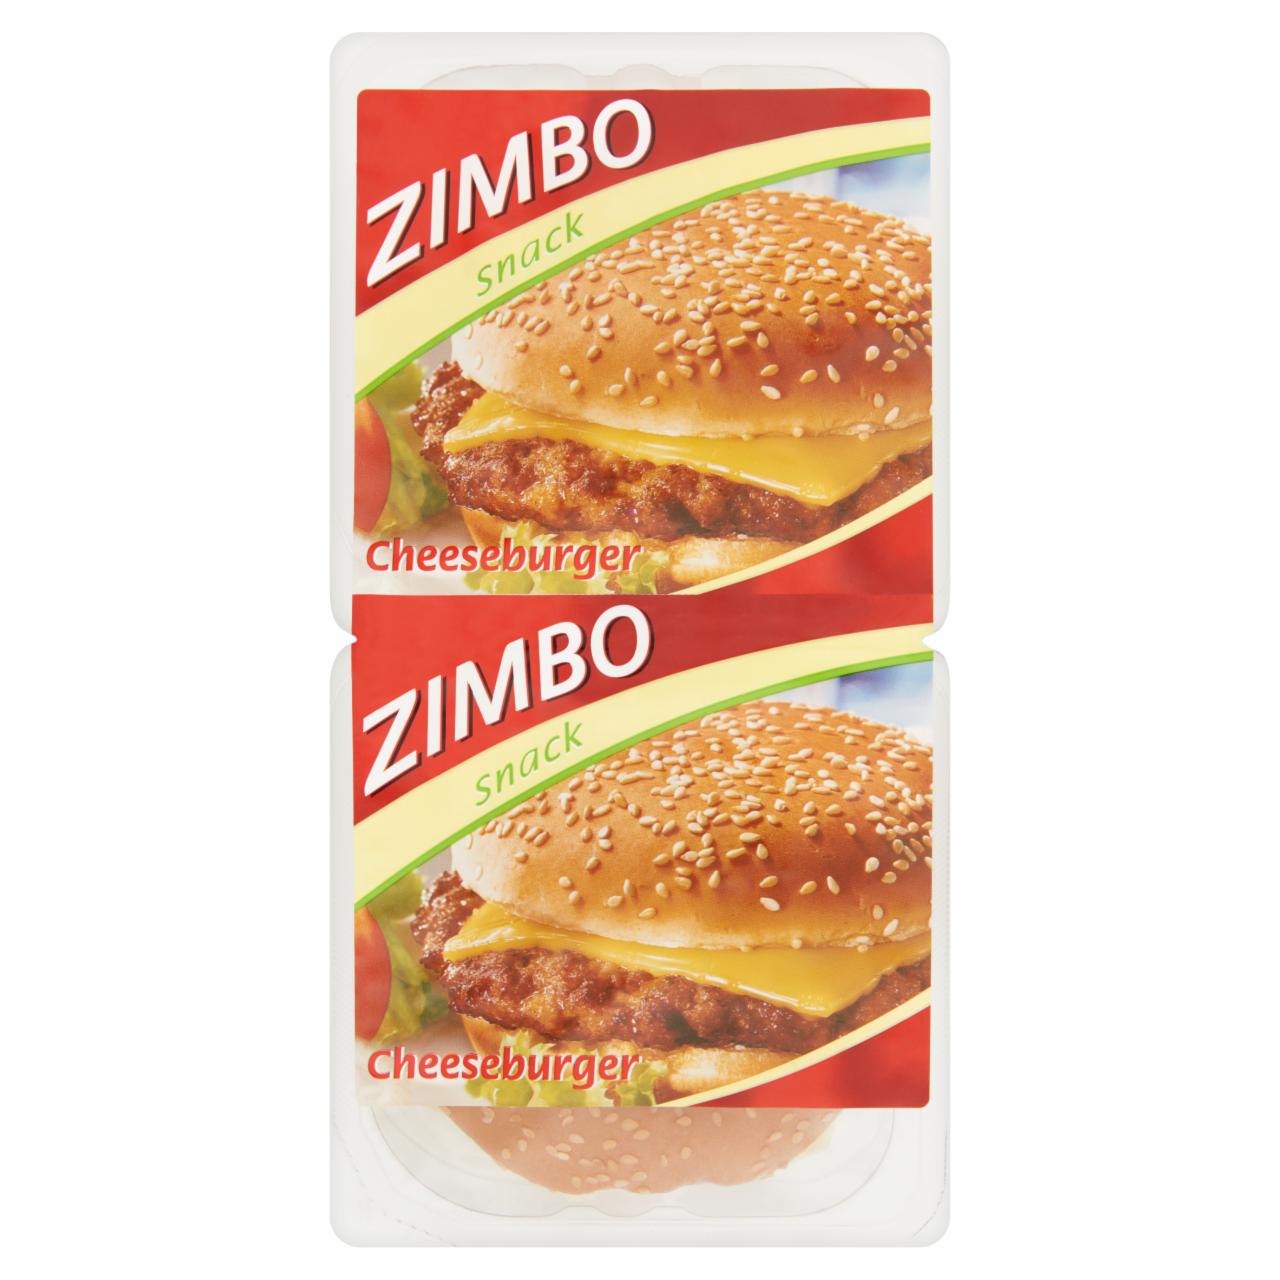 Képek - Zimbo Snack Cheeseburger sült húspogácsa sajttal, szezámmagos zsemlében 2 db 280 g